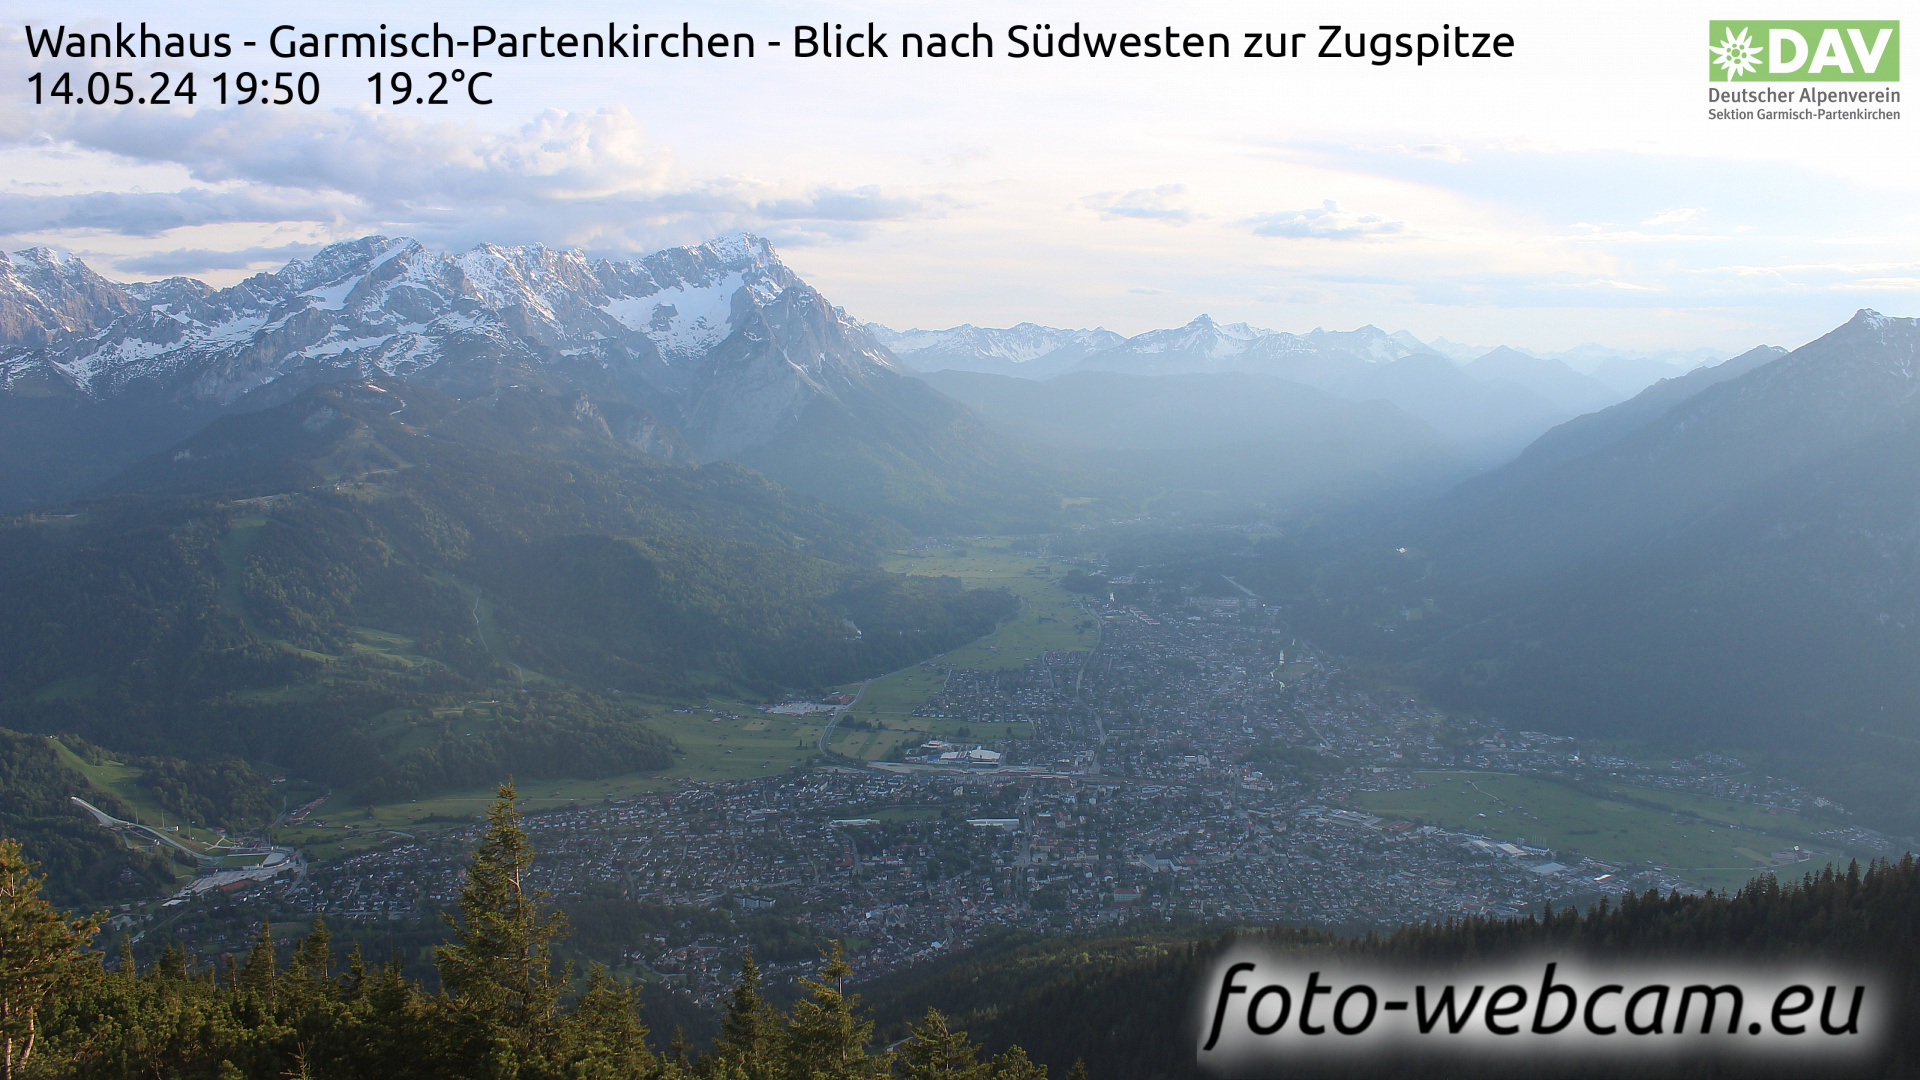 Garmisch-Partenkirchen Sa. 19:51